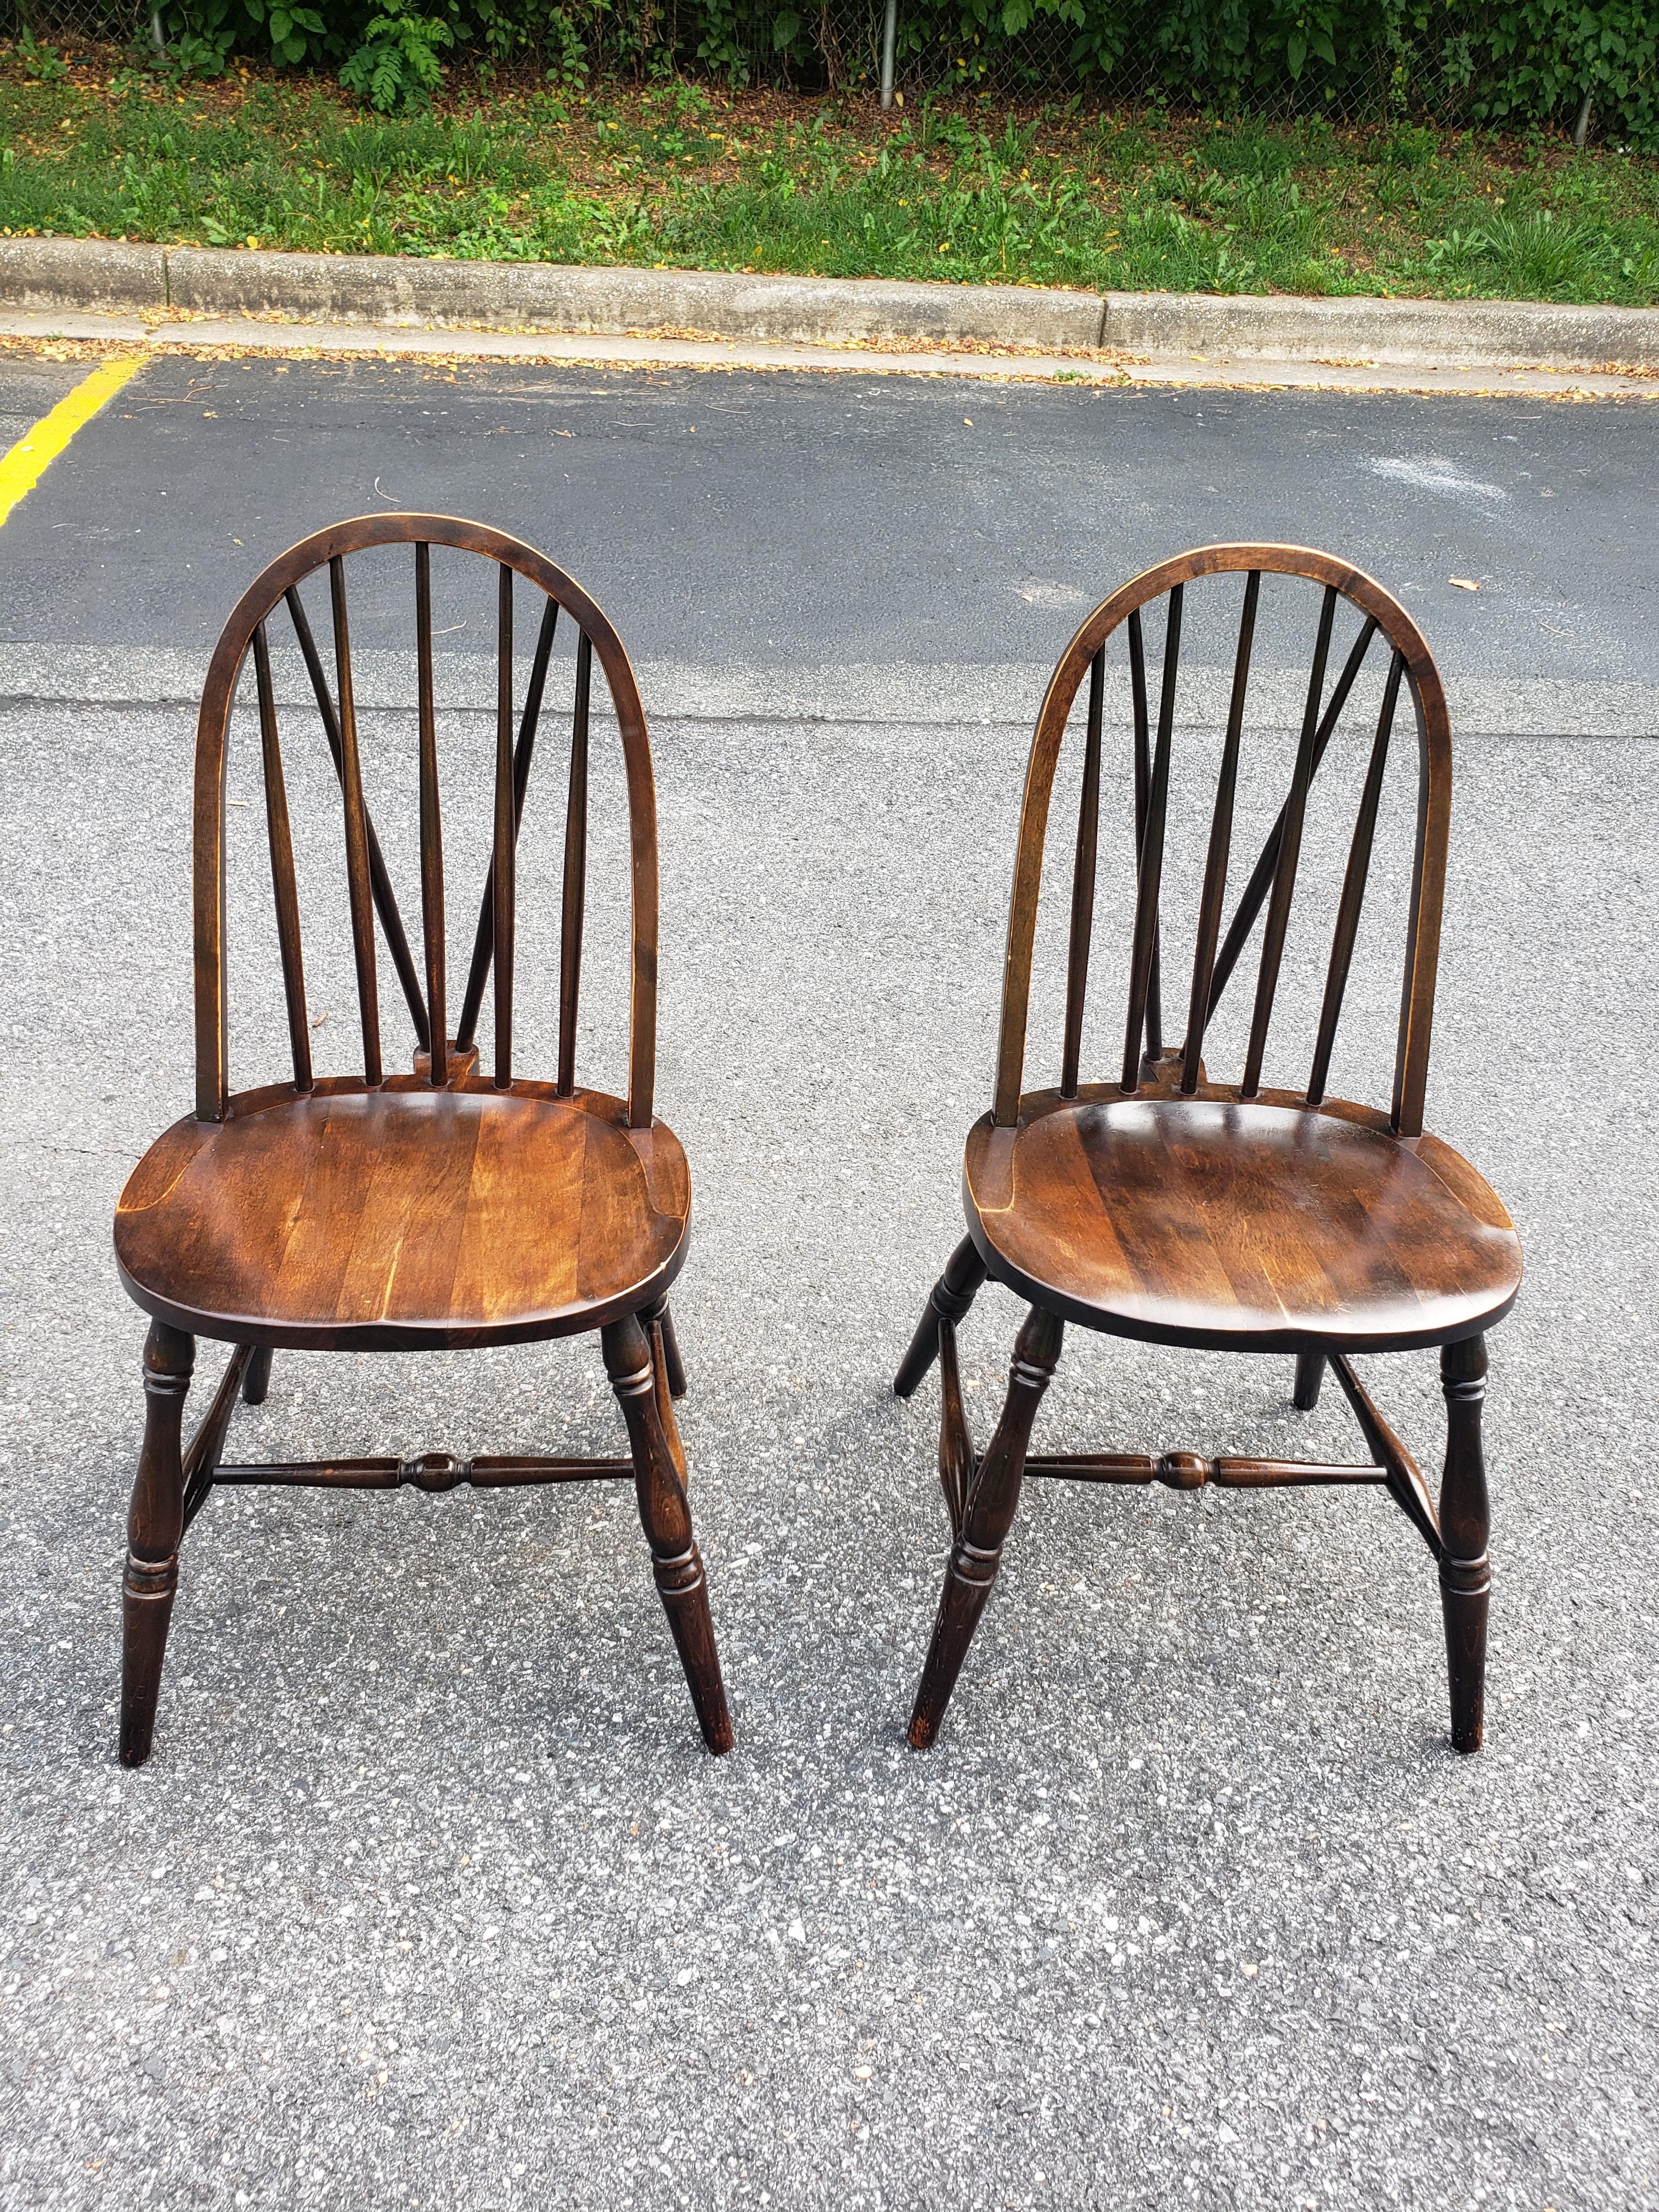 
Ein Paar 1900er Parkersburg Chair Company Walnuss Brace Back Windsor Side Chairs vor kurzem überarbeitet und in sehr gutem antiken Zustand. 
Sitzhöhe 17,5